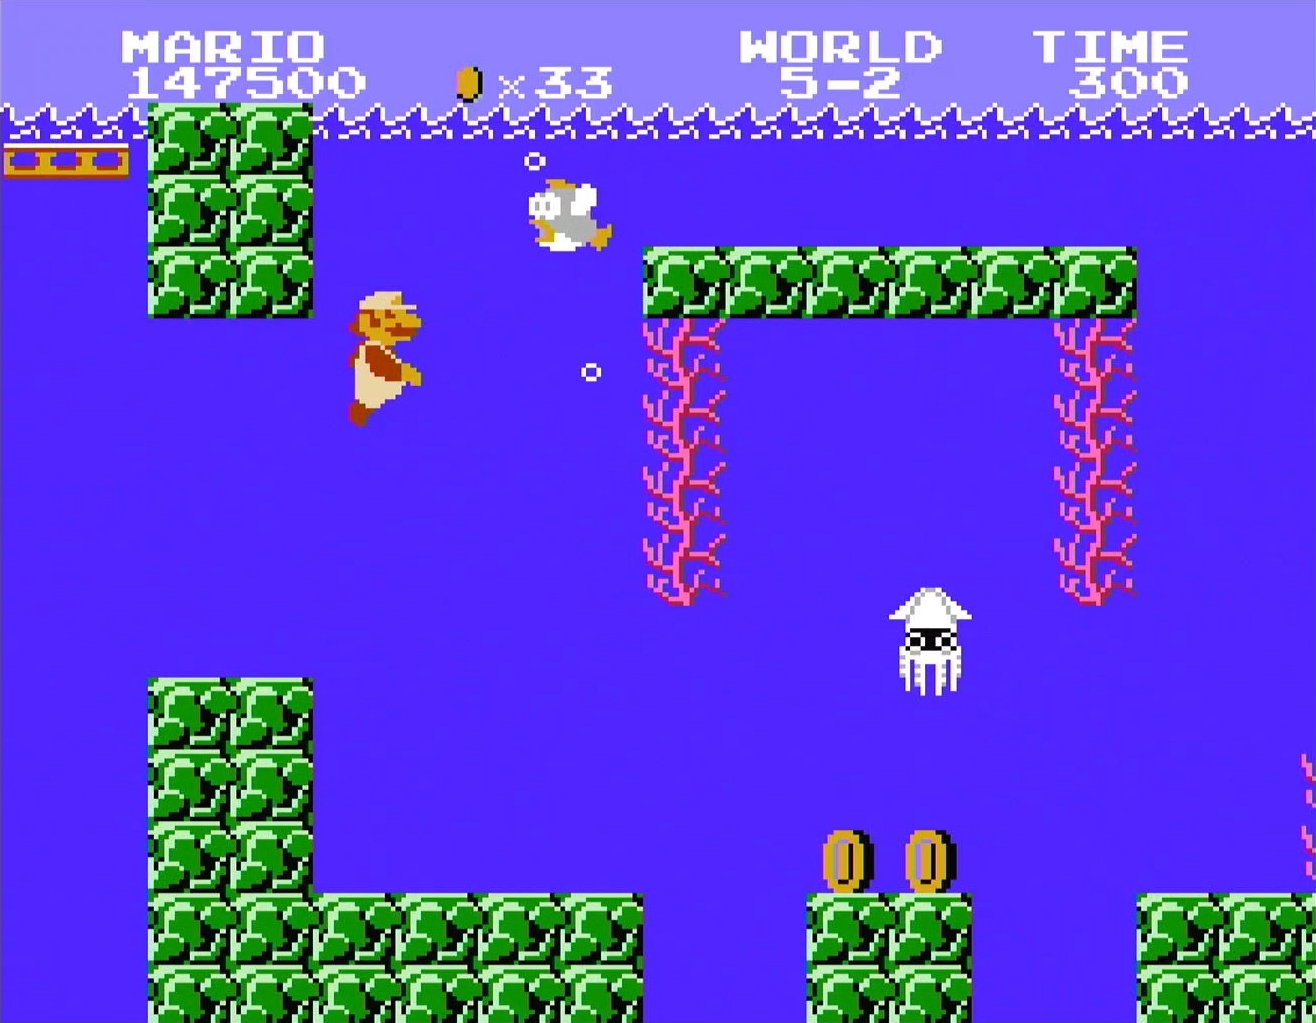 Super Mario Bros. NES (1985) - Underwater Level